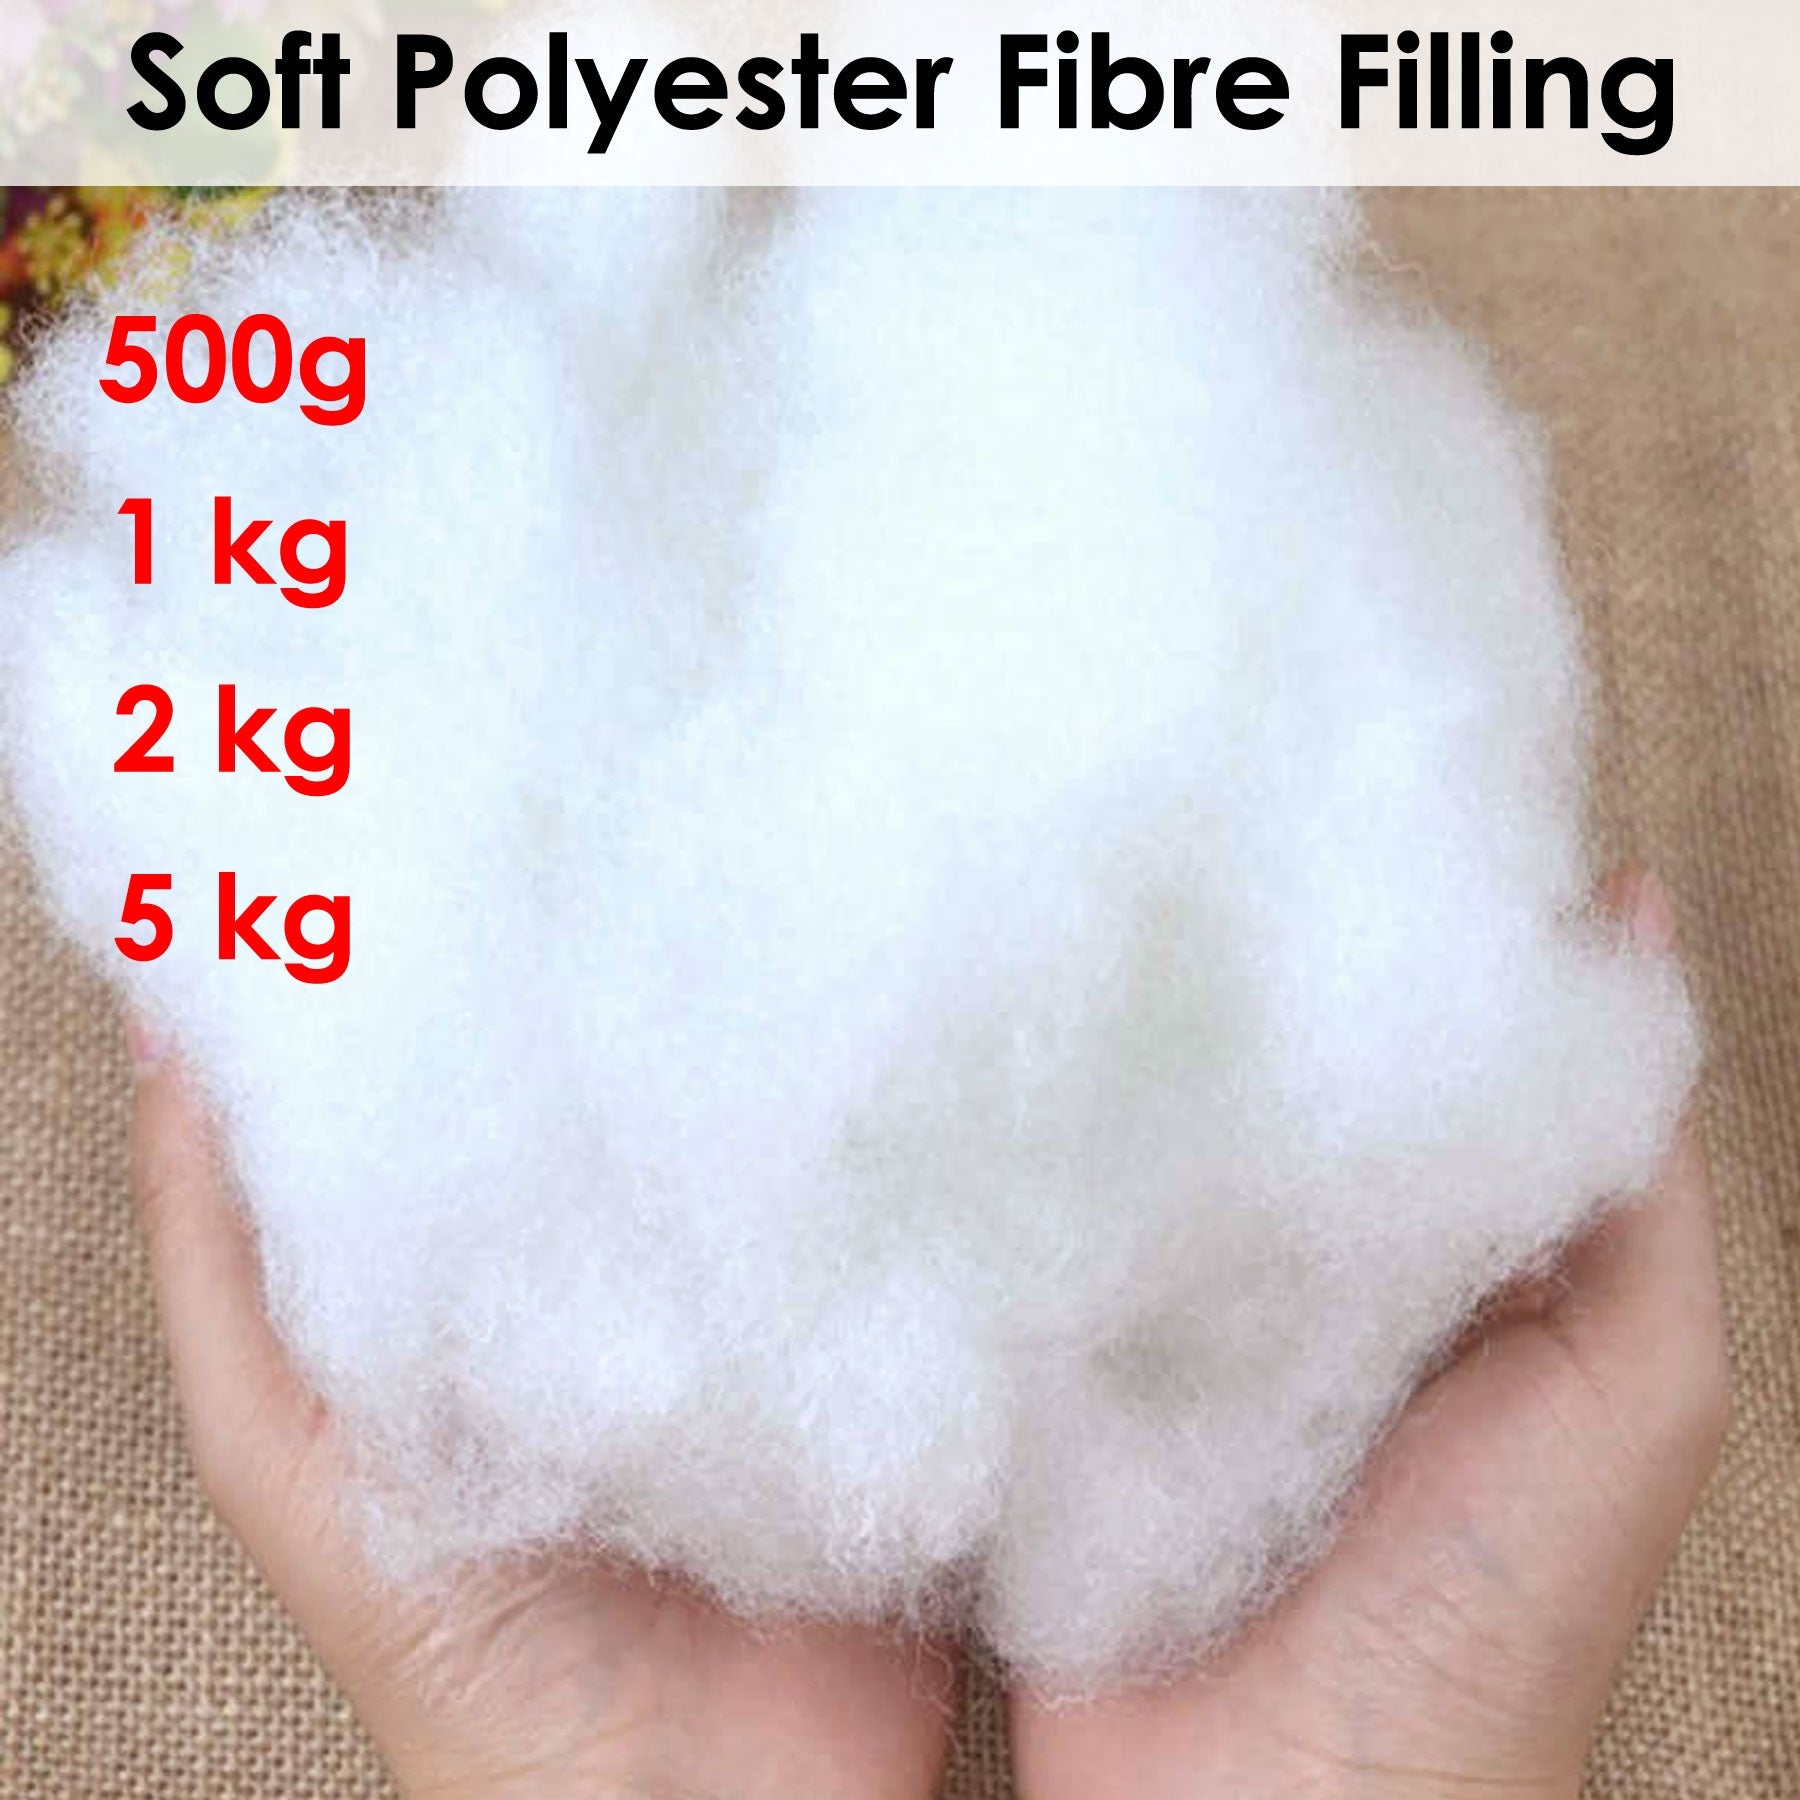 Soft Polyester Fiber Filling 2kg